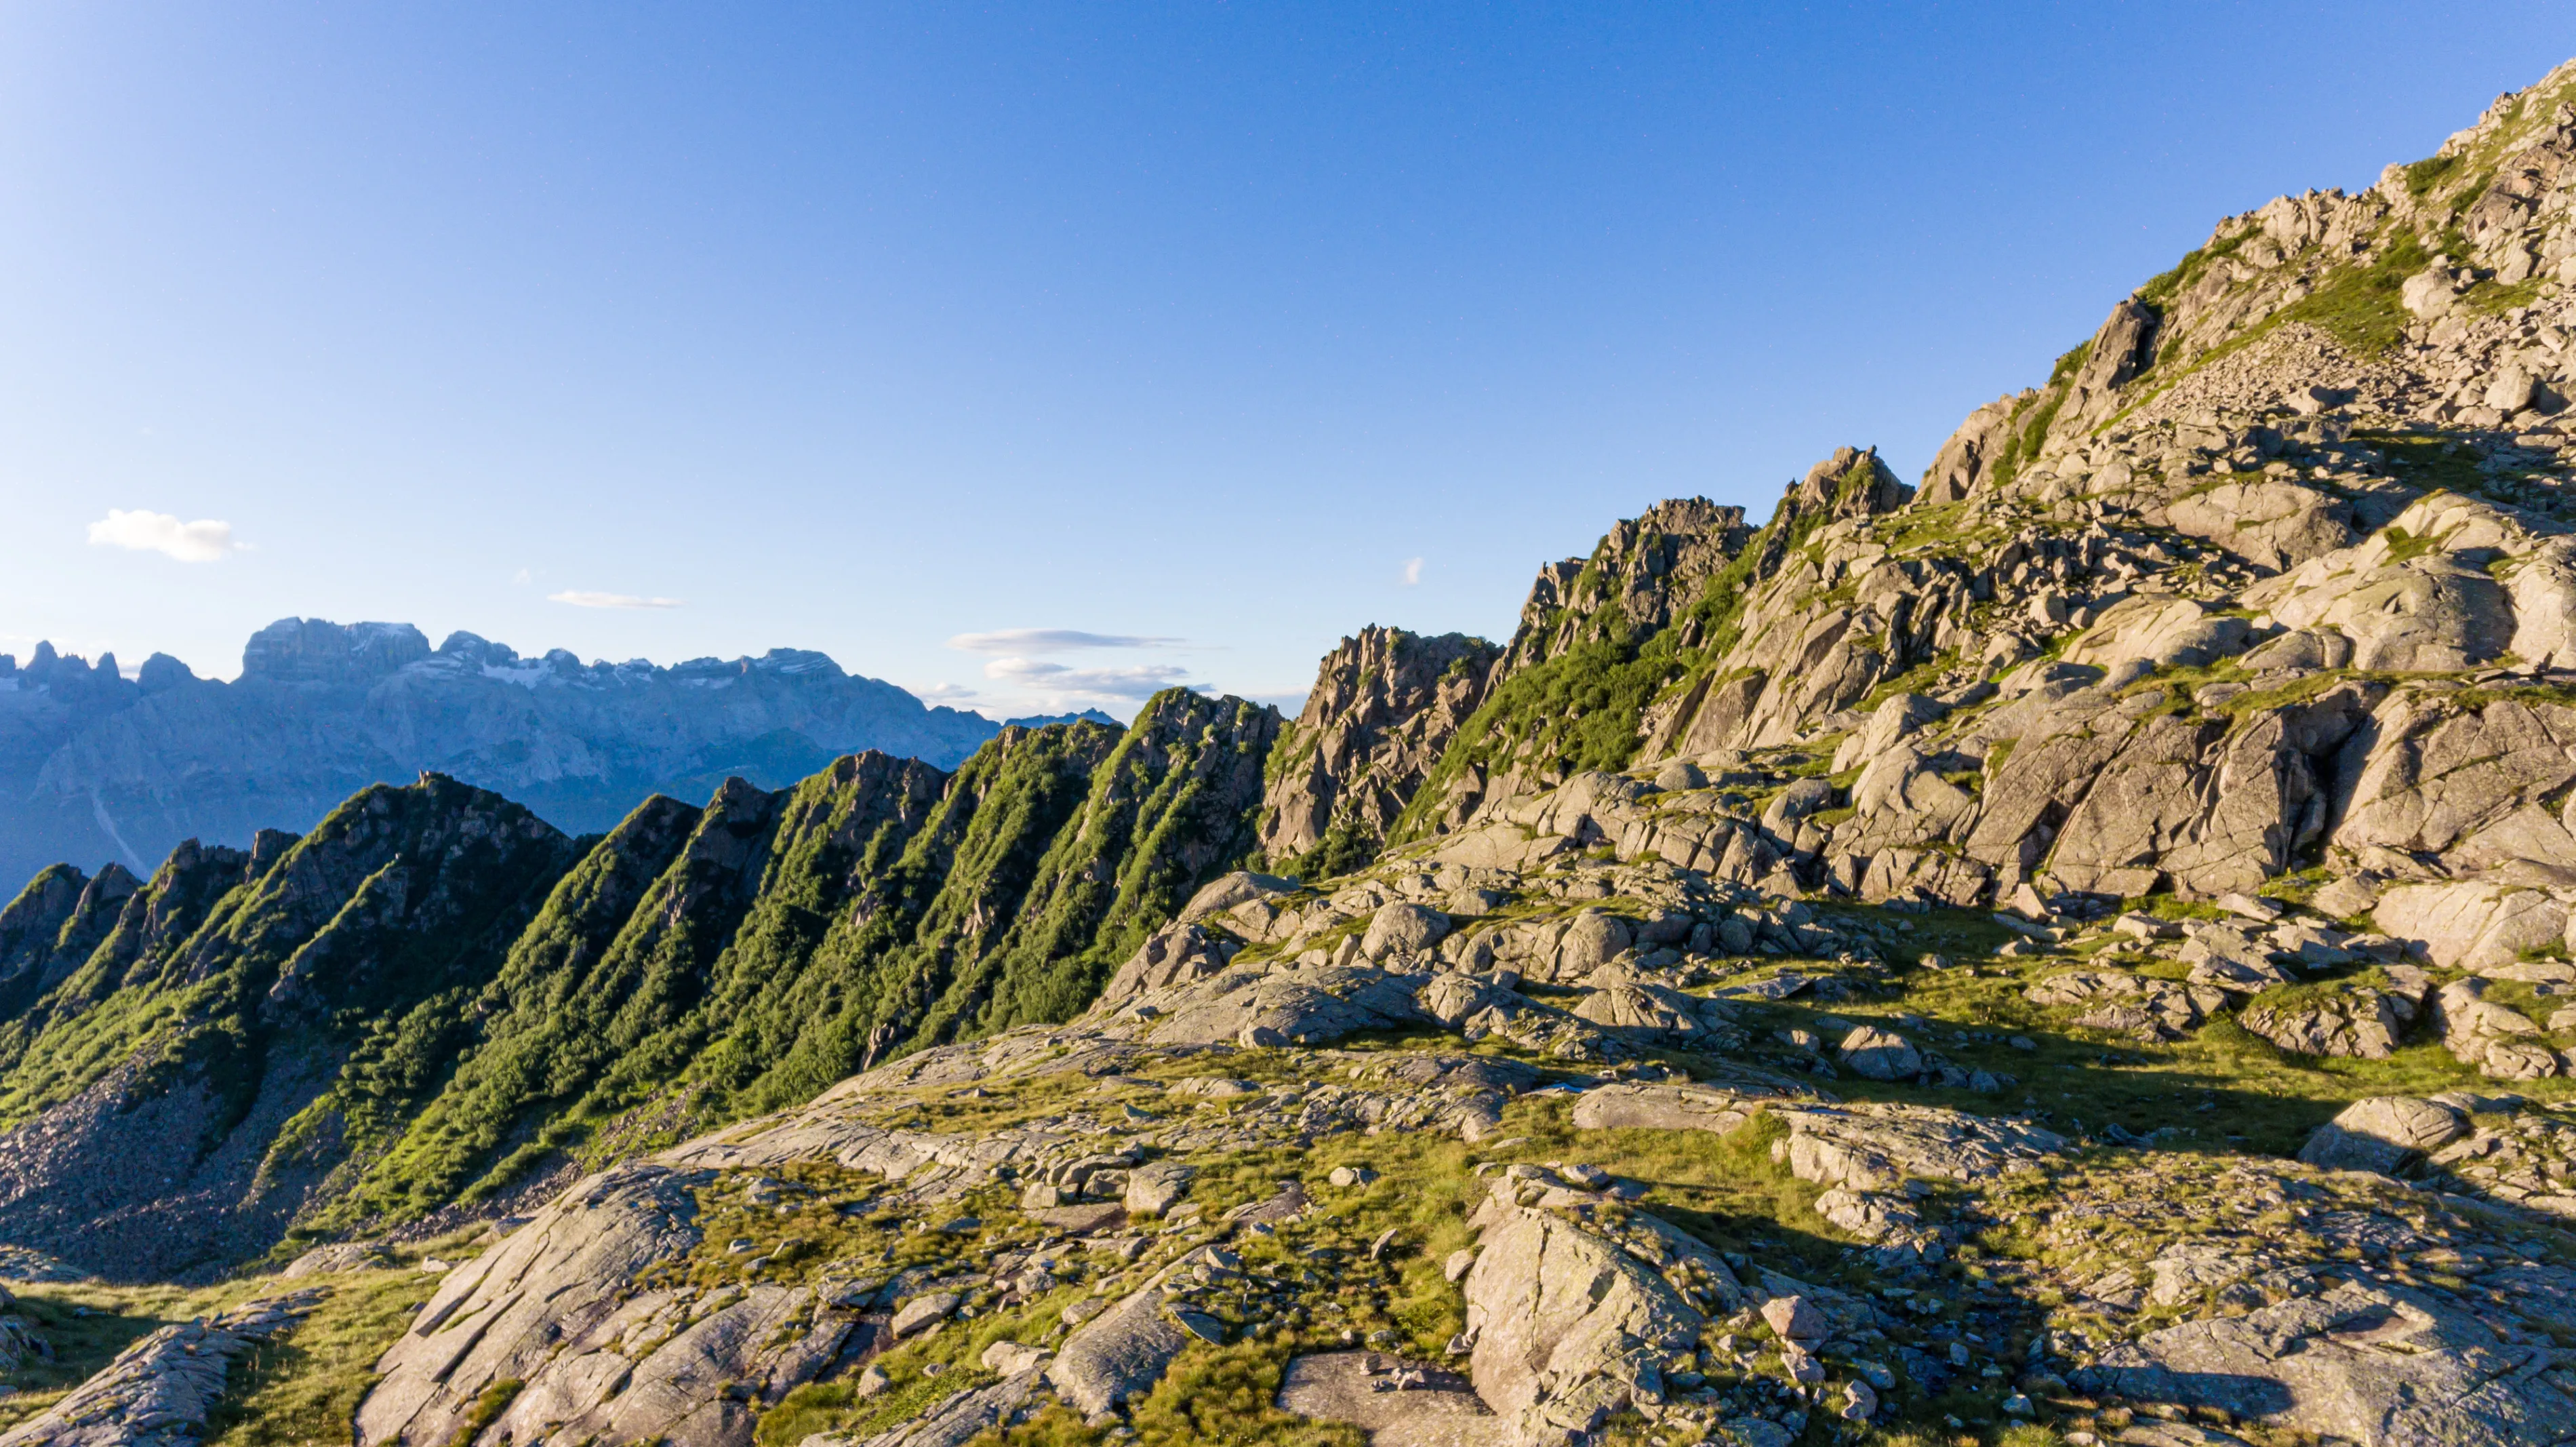 Захватывающий горный пейзаж с ледниковыми озерами в итальянских Доломитовых Альпах.